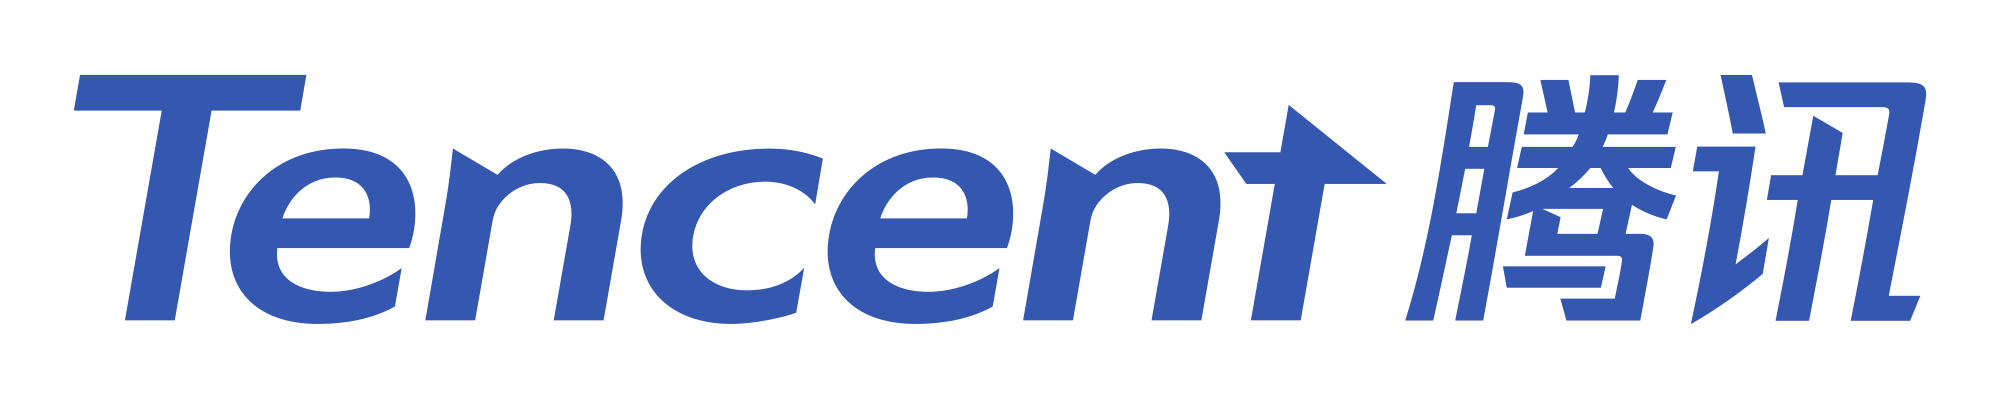 Bildergebnis für Tencent logo